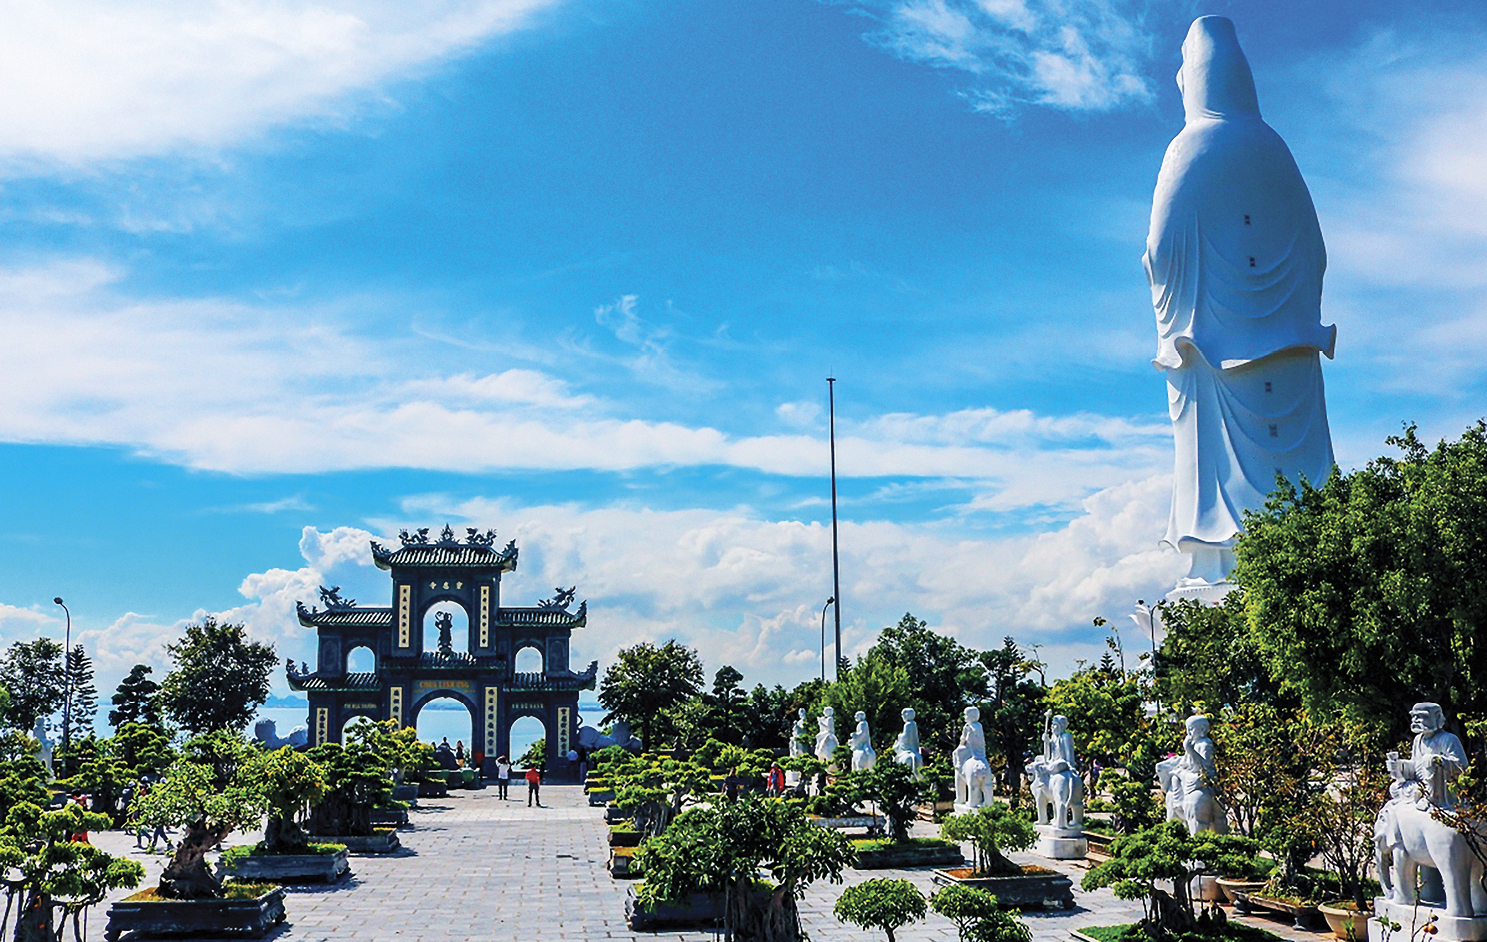 Du lịch hè tại Đà Nẵng và 5 trải nghiệm đáng nhớ - Chùa Linh ứng Đà Nẵng